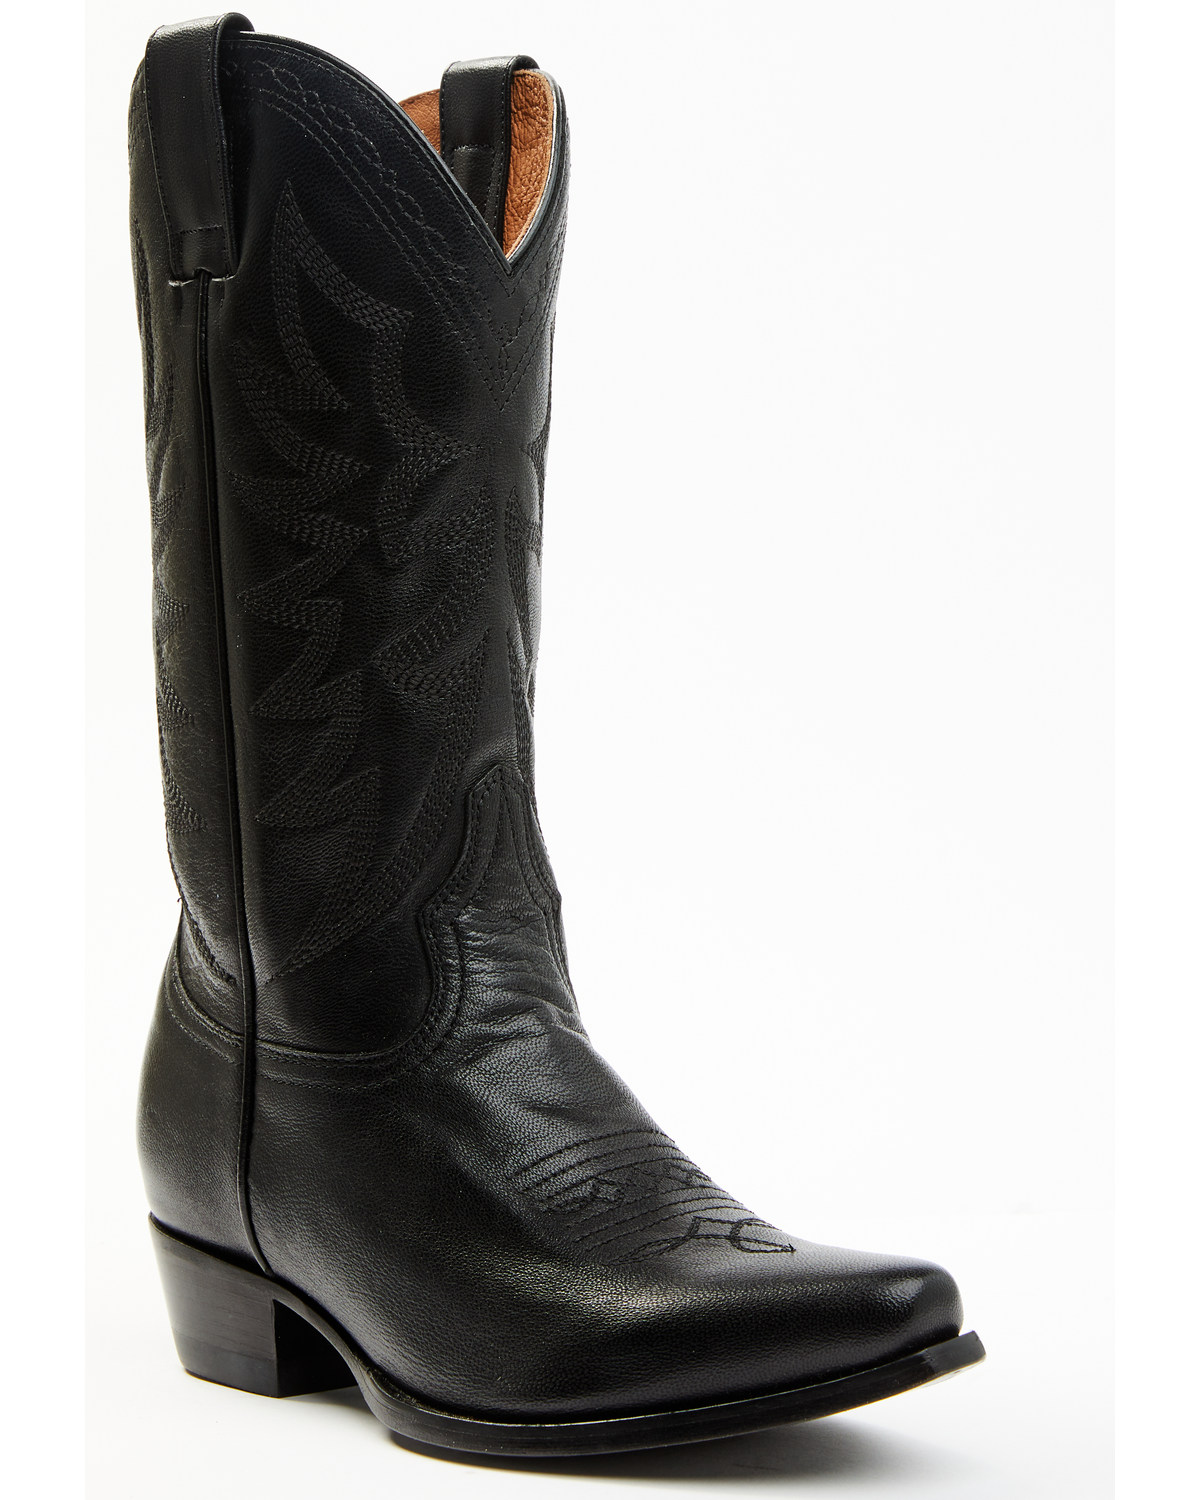 Shyanne Women's Encore Rodeo Western Boots - Snip Toe